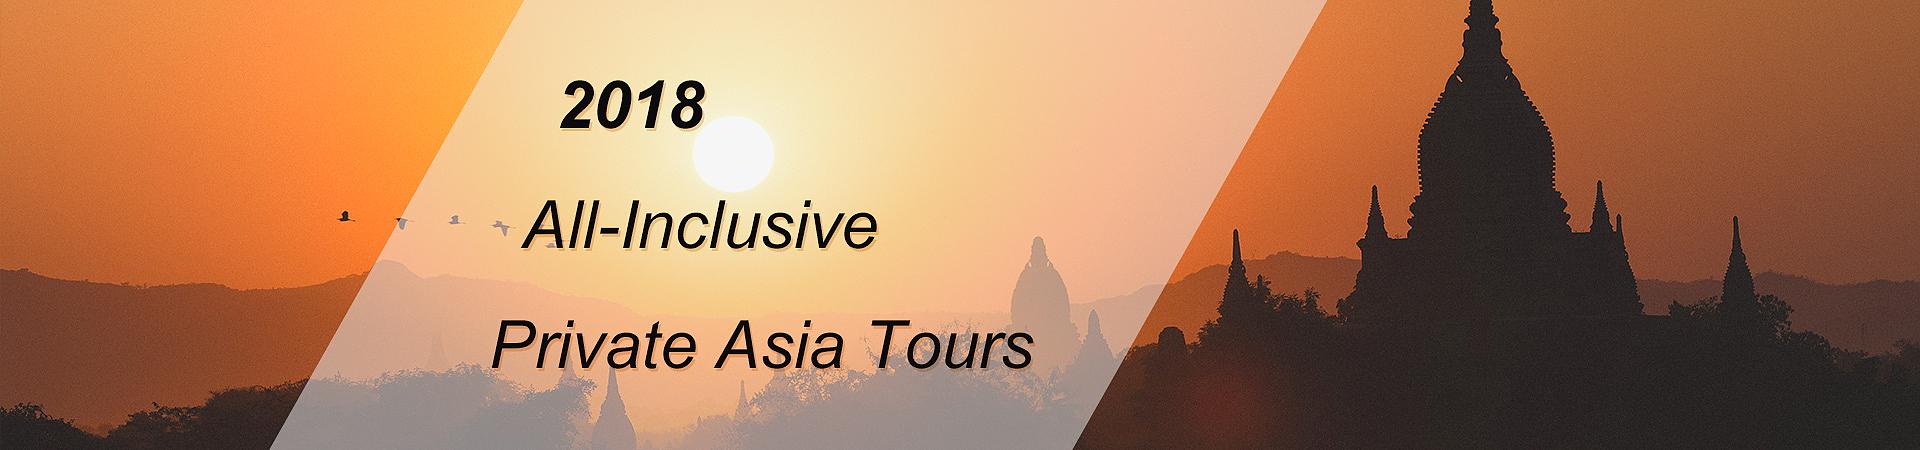 2018 All-Inclusive Private Asia Tours